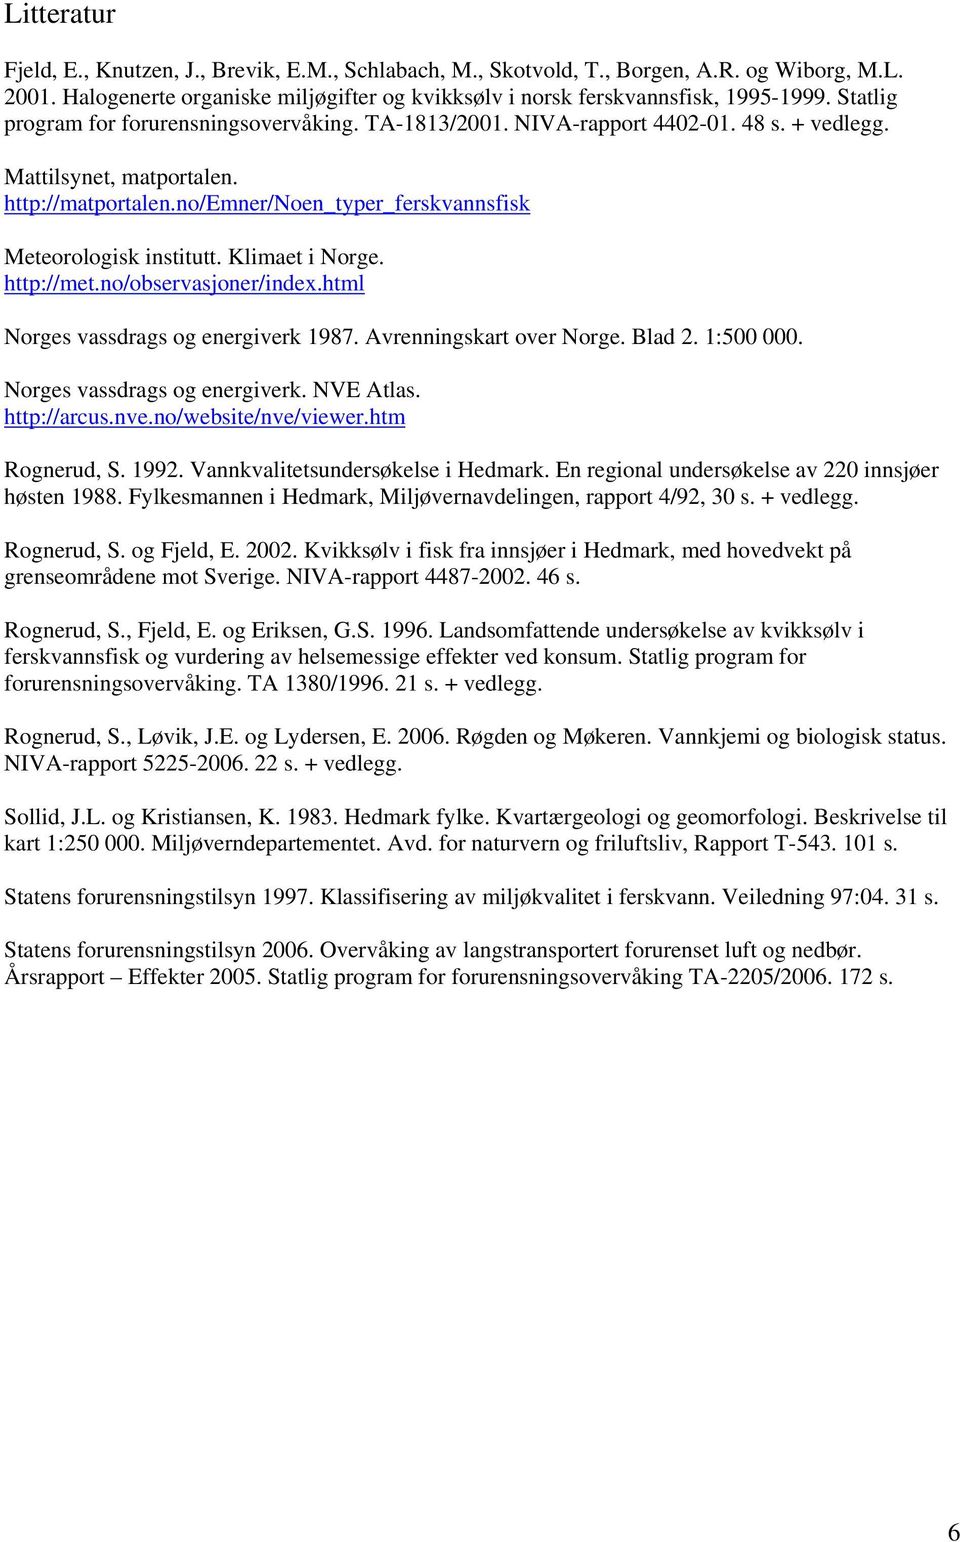 no/emner/noen_typer_ferskvannsfisk Meteorologisk institutt. Klimaet i Norge. http://met.no/observasjoner/index.html Norges vassdrags og energiverk 1987. Avrenningskart over Norge. Blad 2. 1:500 000.